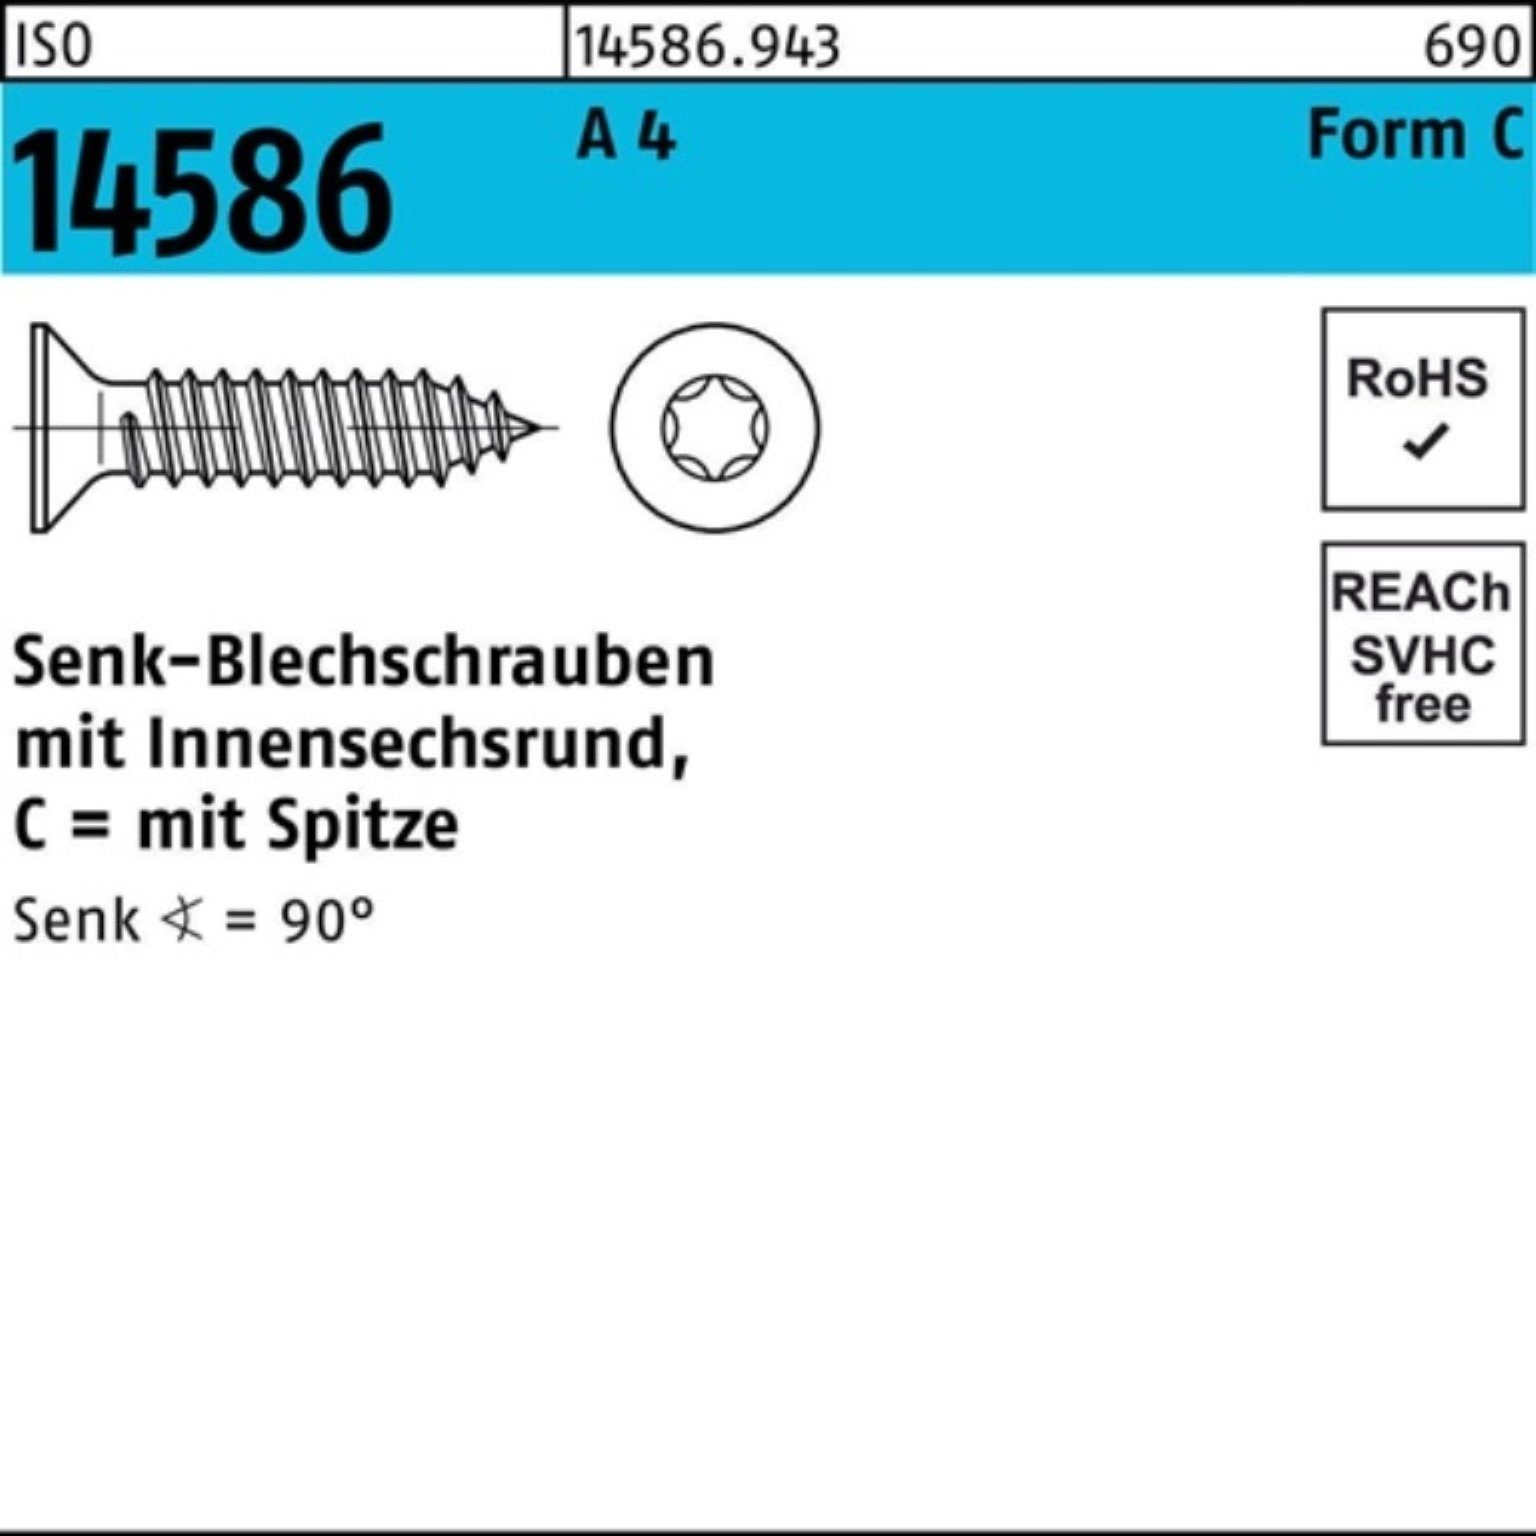 Reyher Schraube 1000er Pack Senkblechschraube ISO 14586 ISR/Spitze 3,9x 13-T15 A 4 100